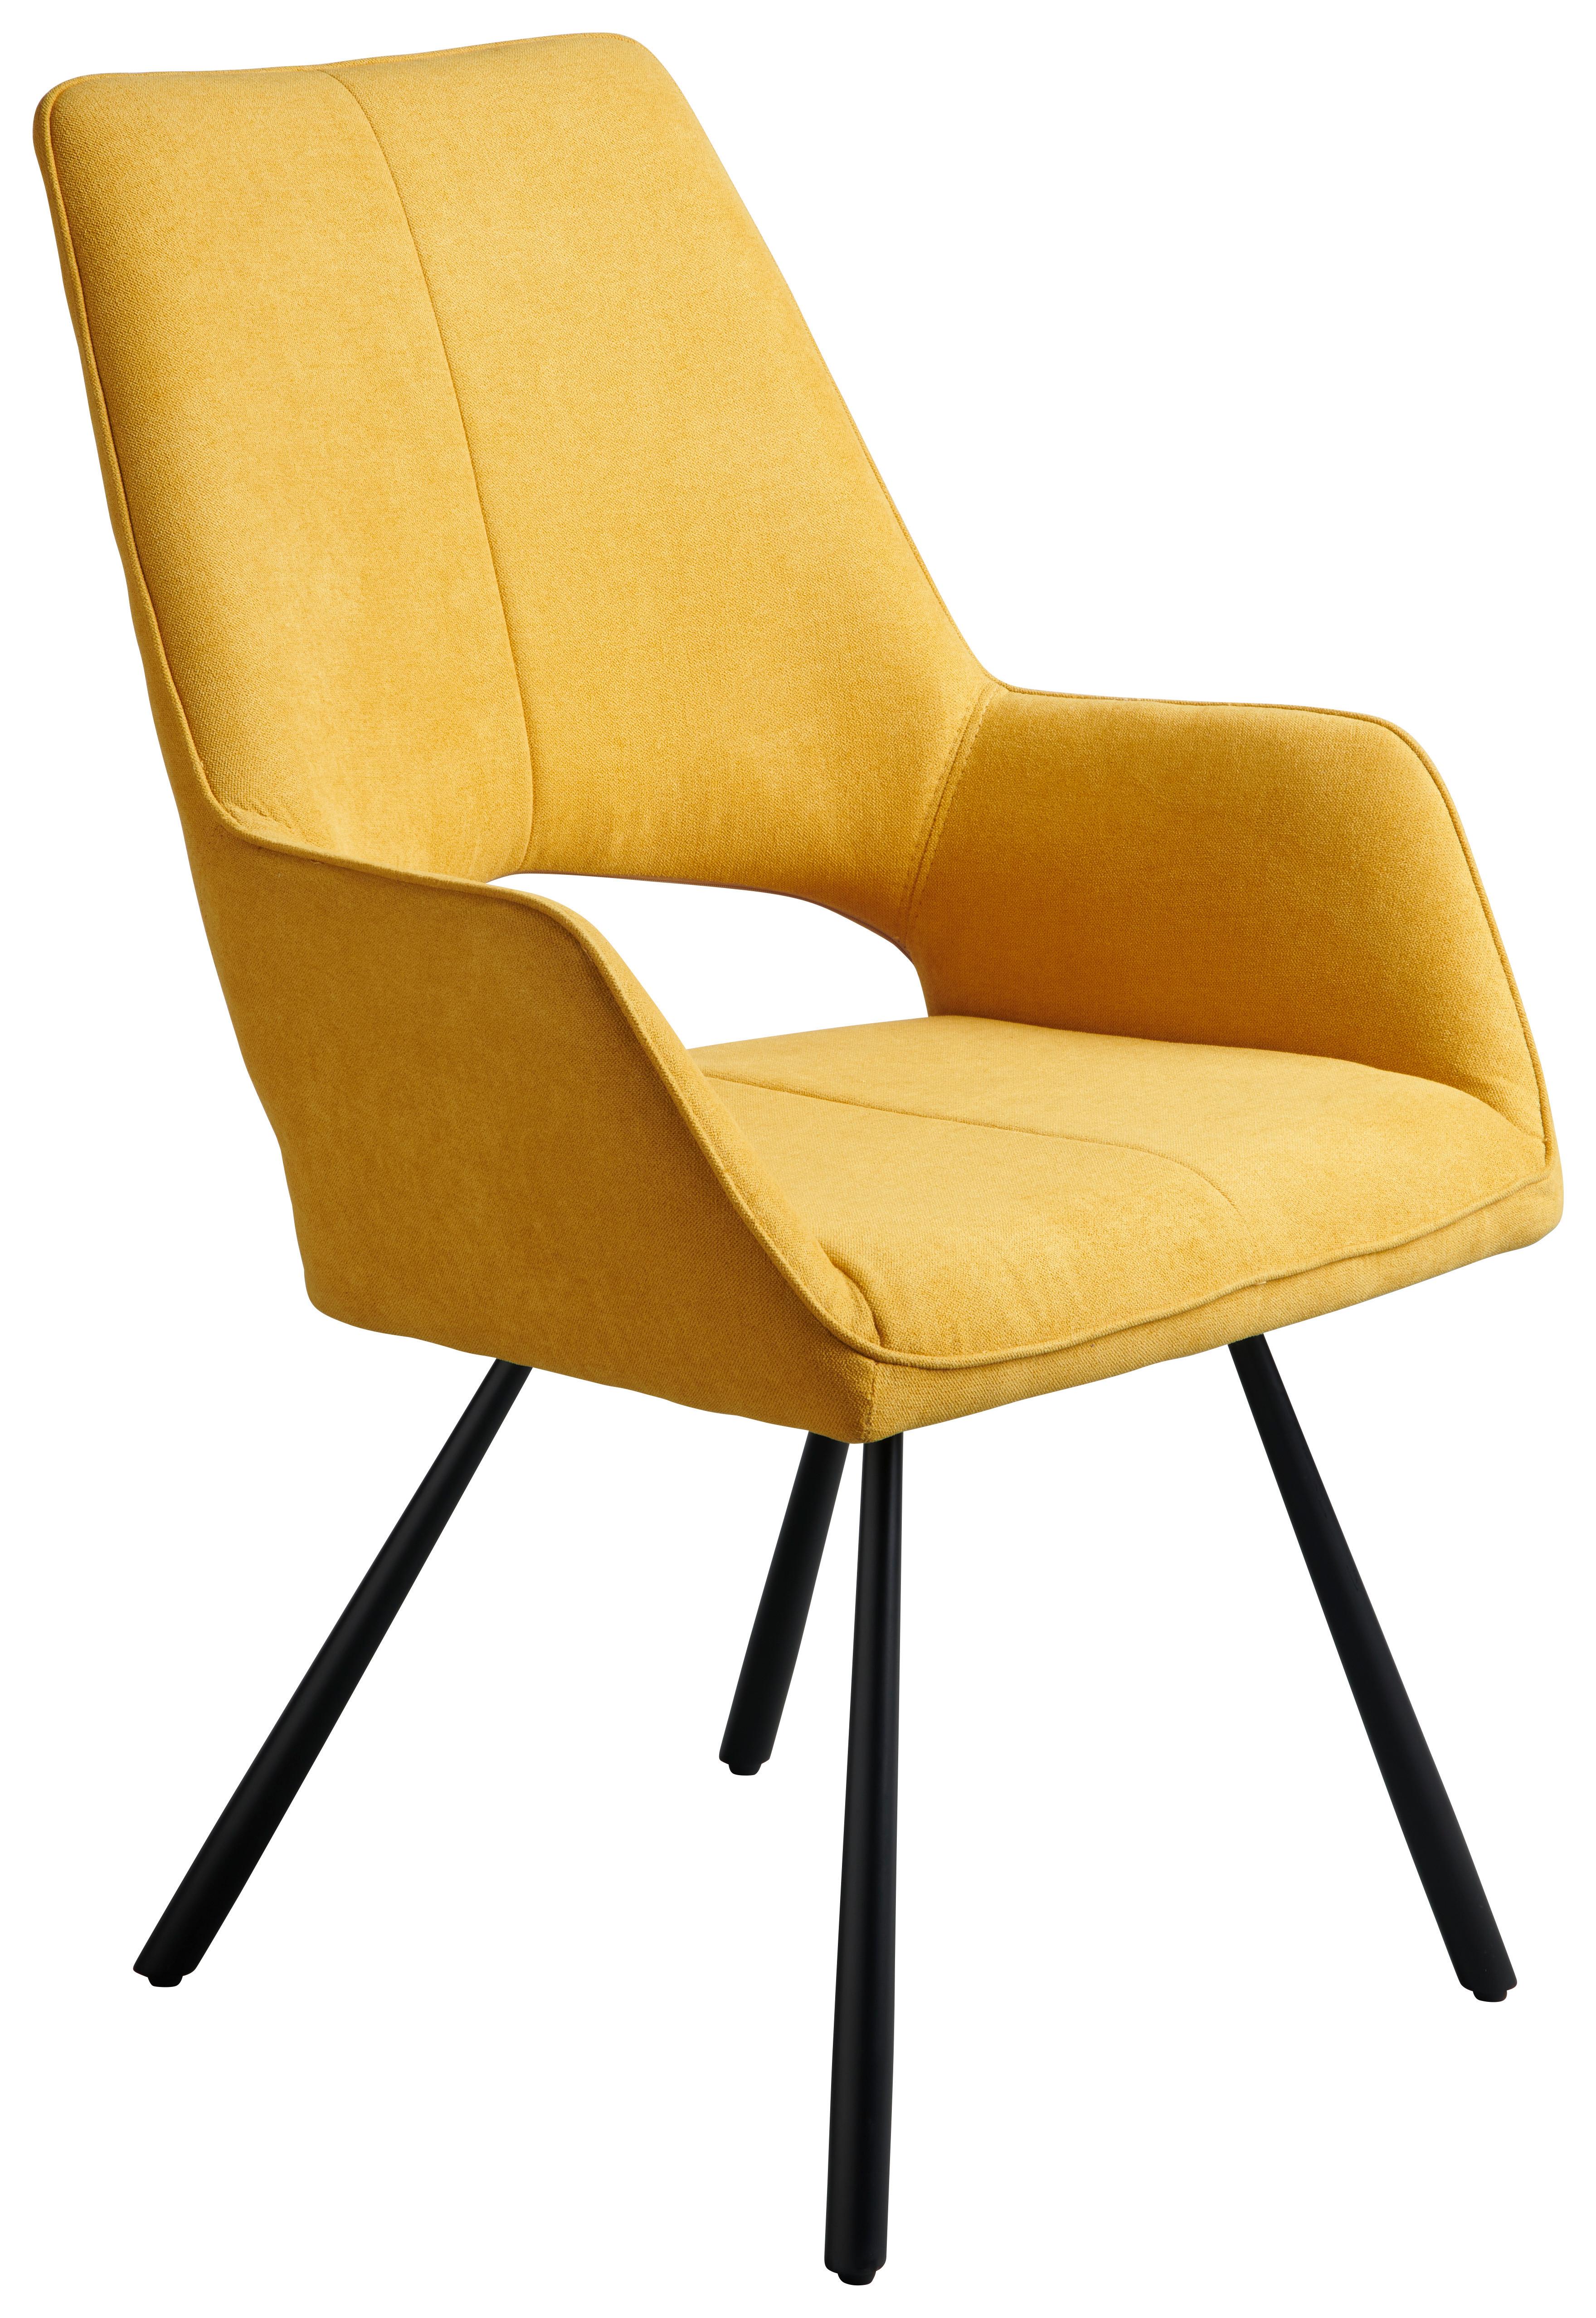 Čtyřnohá Židle Beatrice - černá/žlutá, Moderní, kov/textil (60/93/65cm)